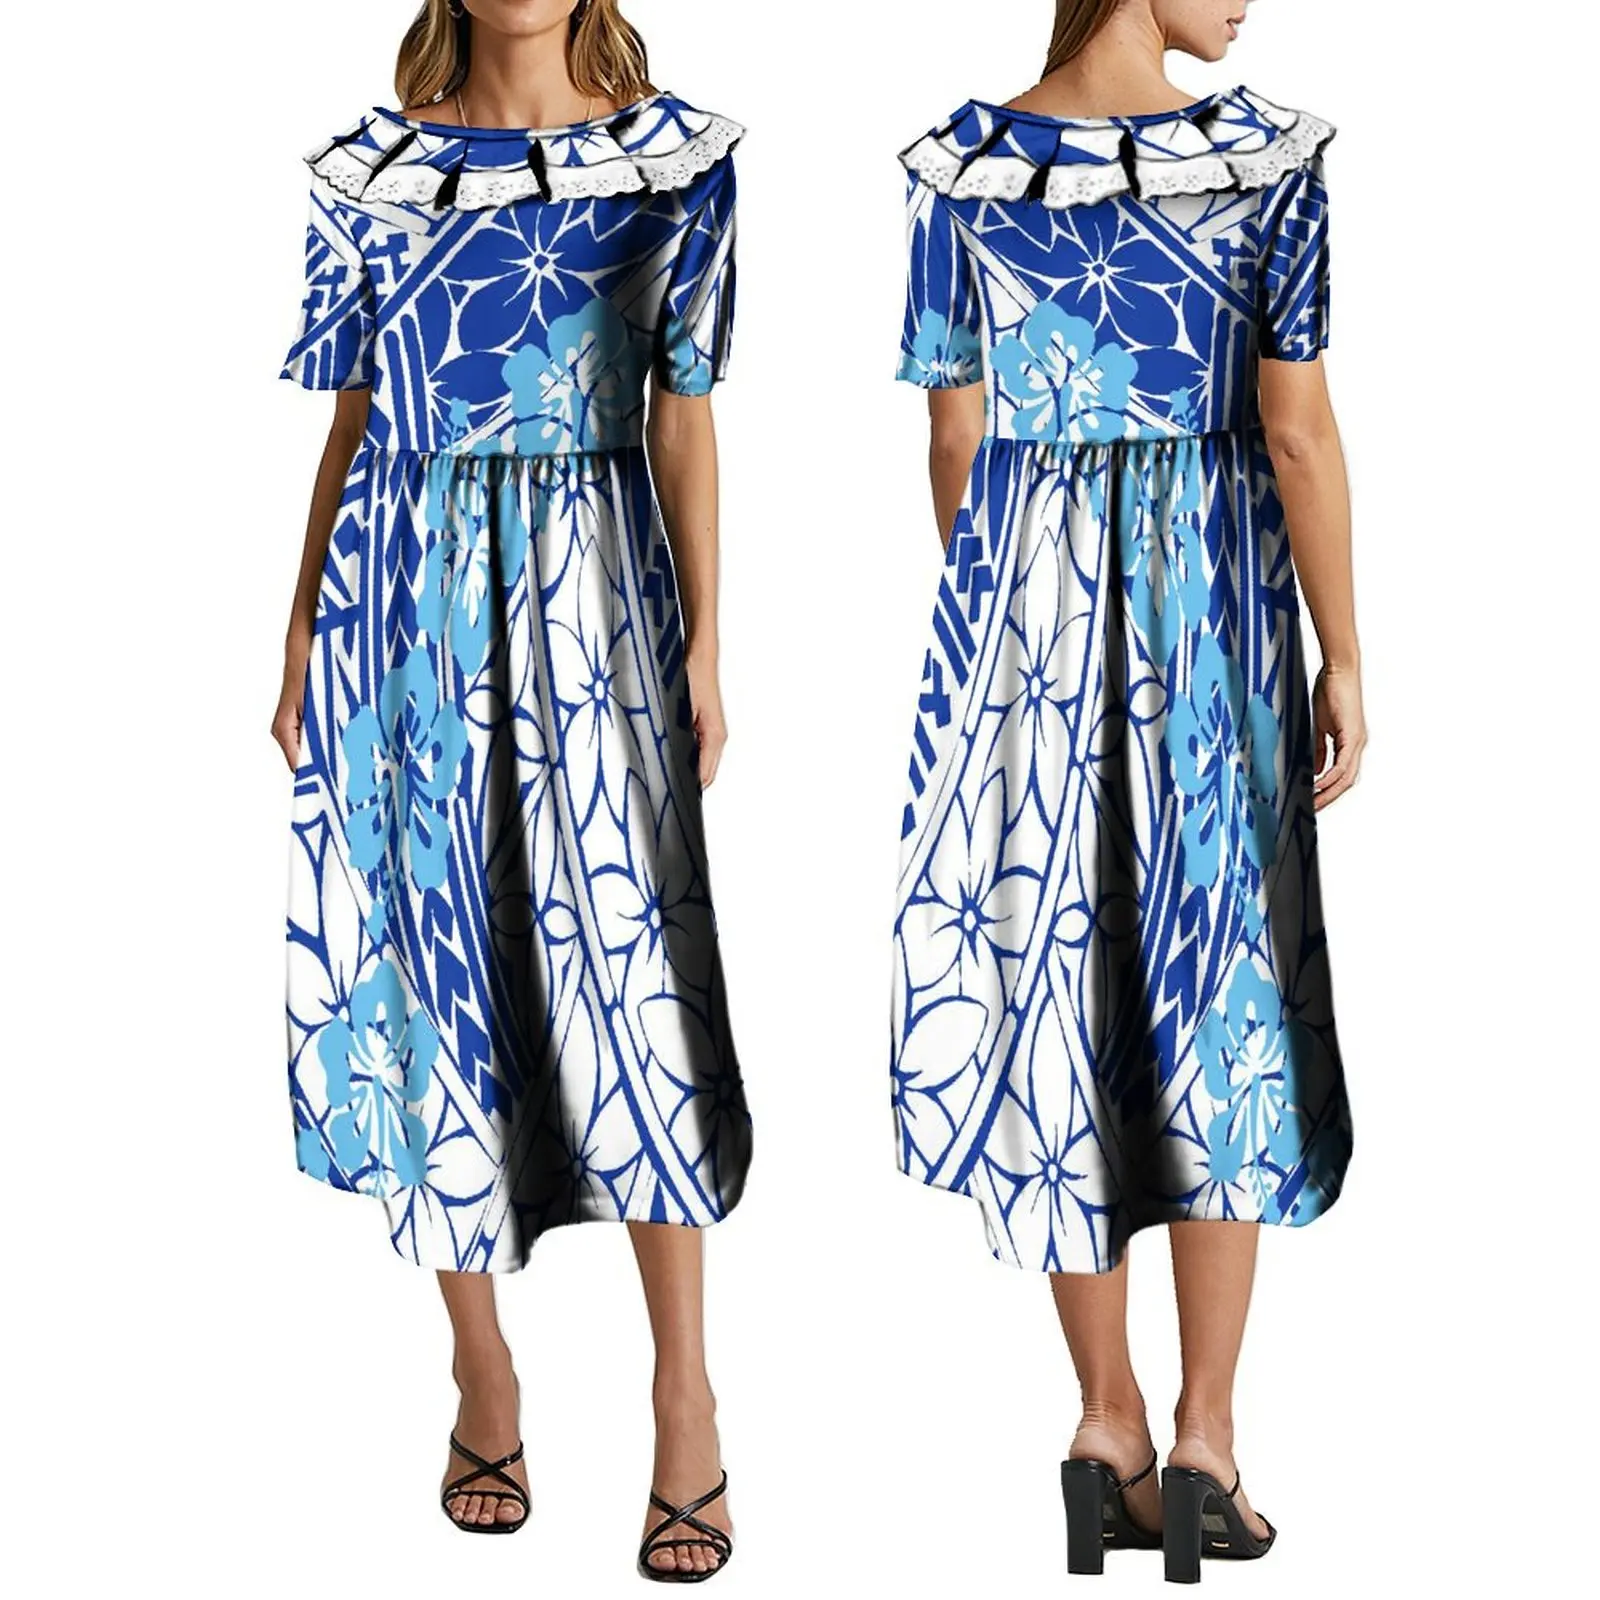 

Polynesian Customized Women's Dress Casual Long Dress Summer Short Sleeve Dress Ruffle Neckline Long Dress